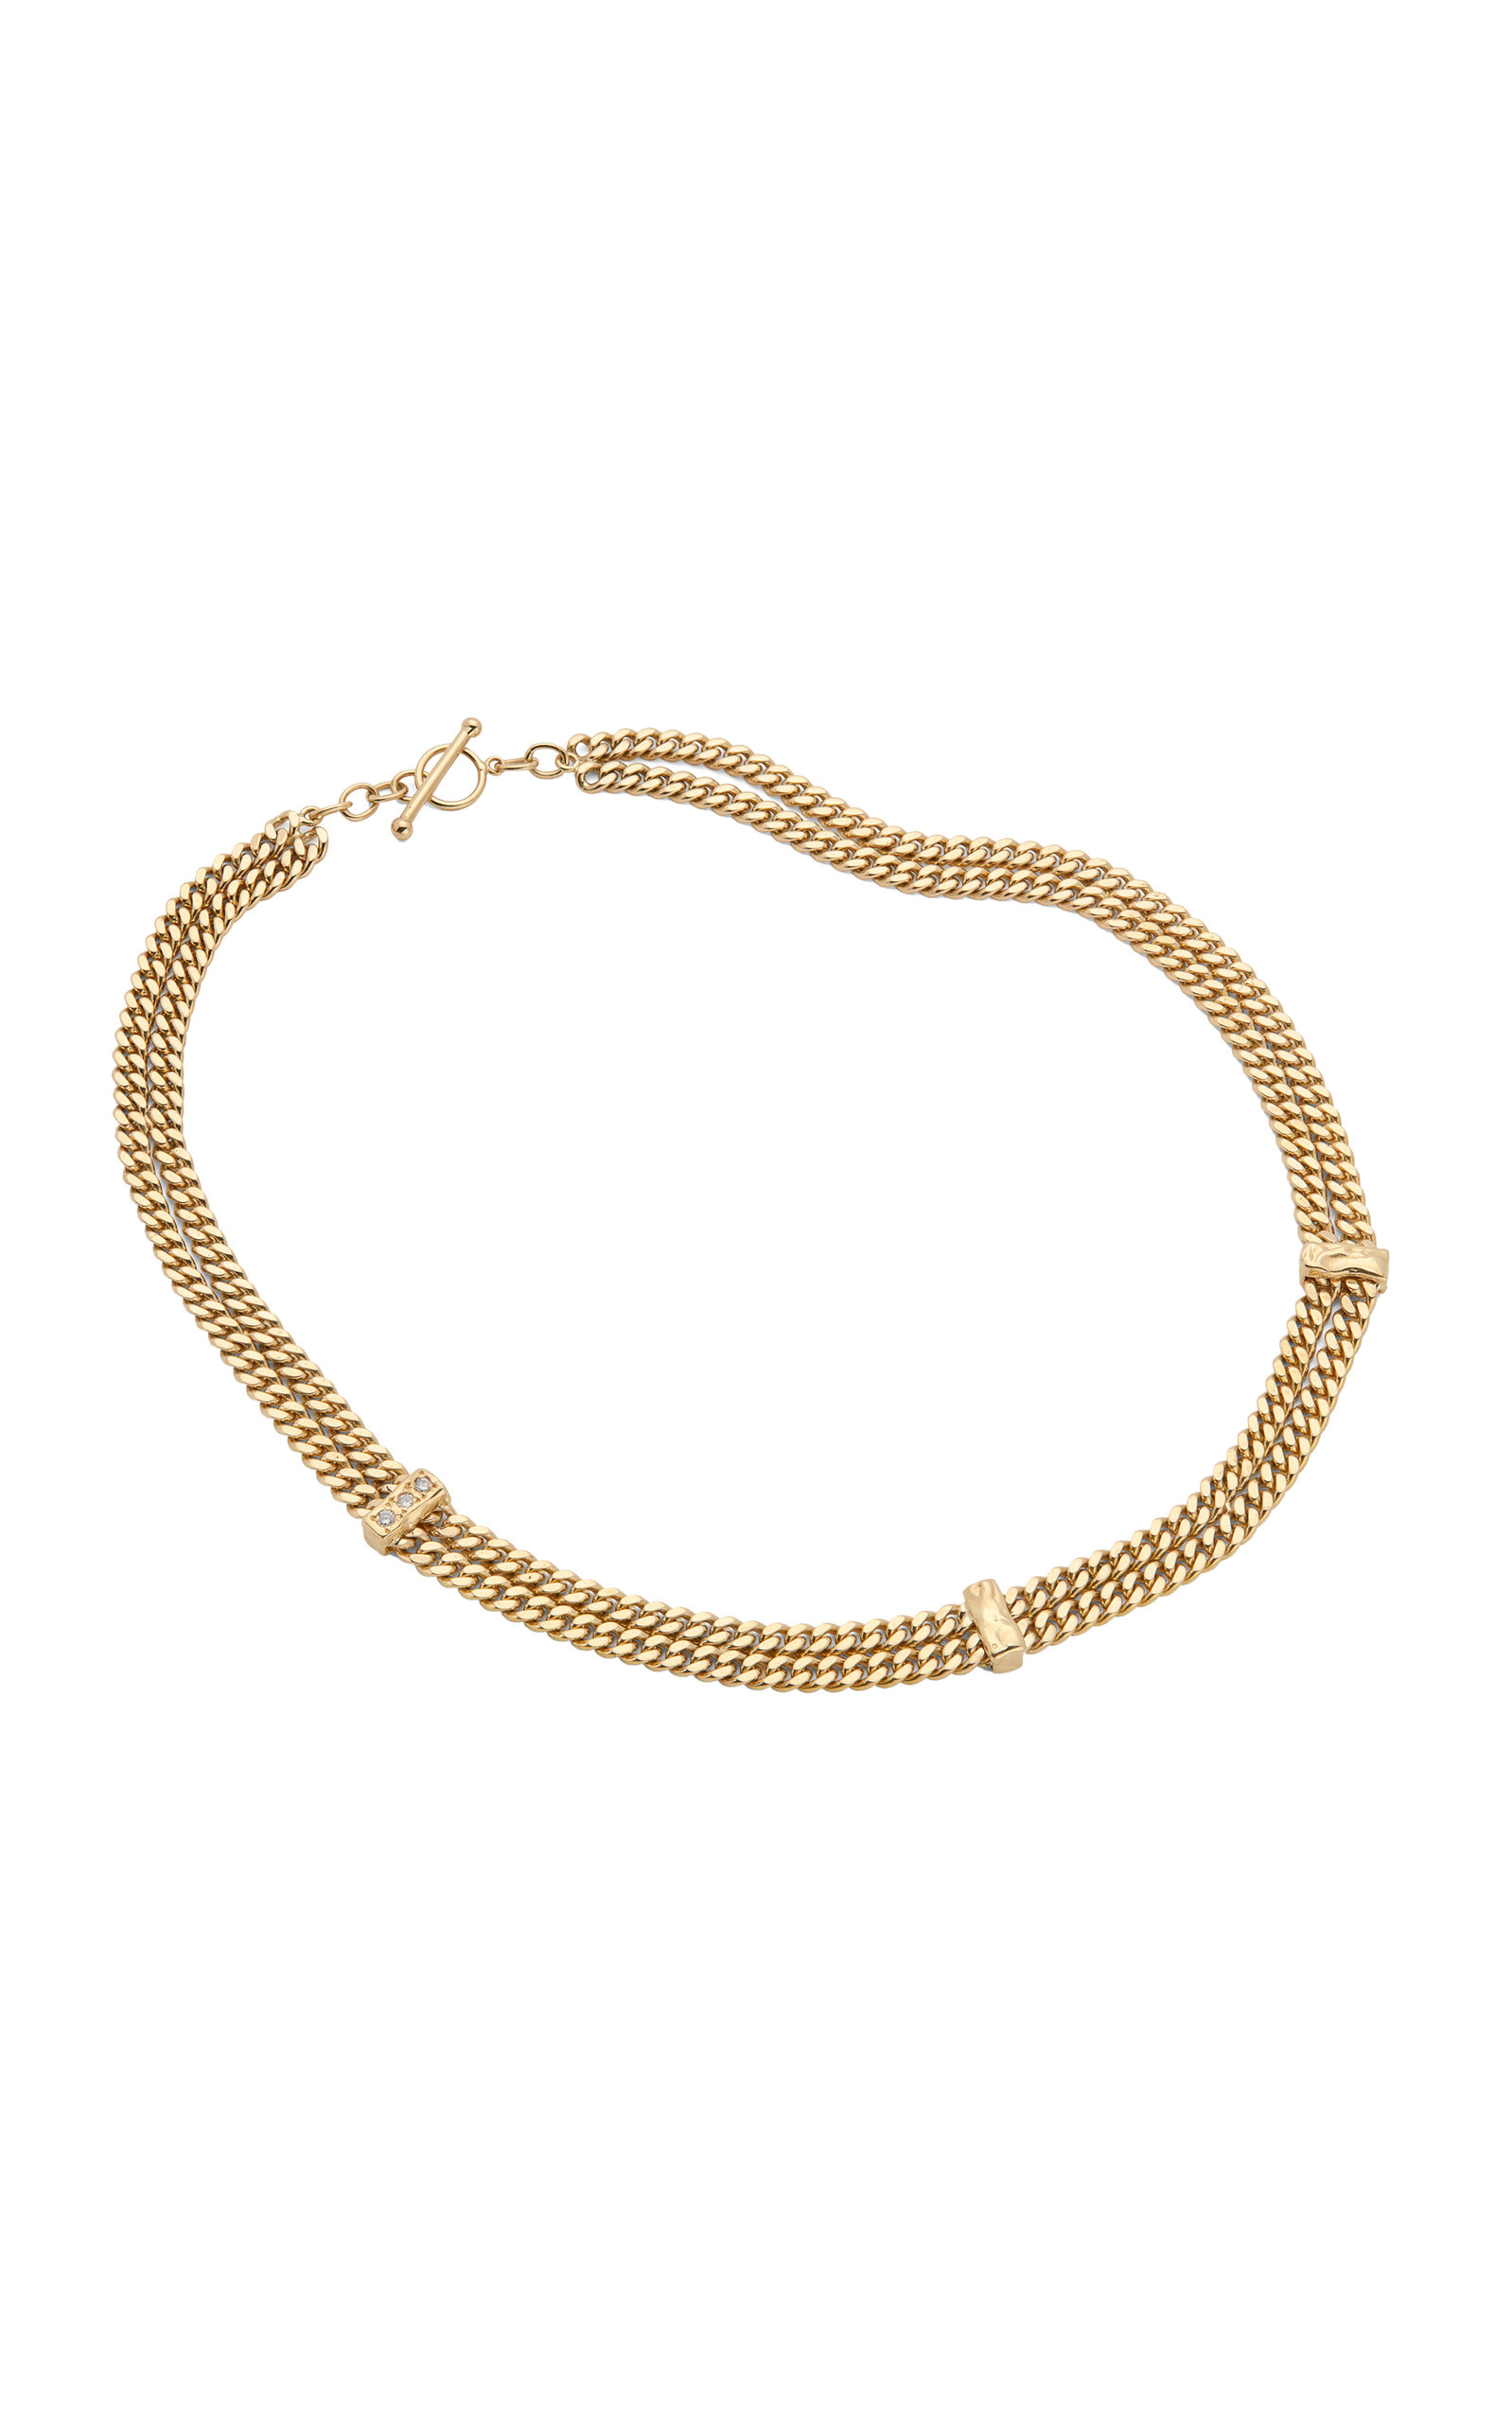 Fie Isolde Women's The Evoke 14K Gold Diamond Necklace